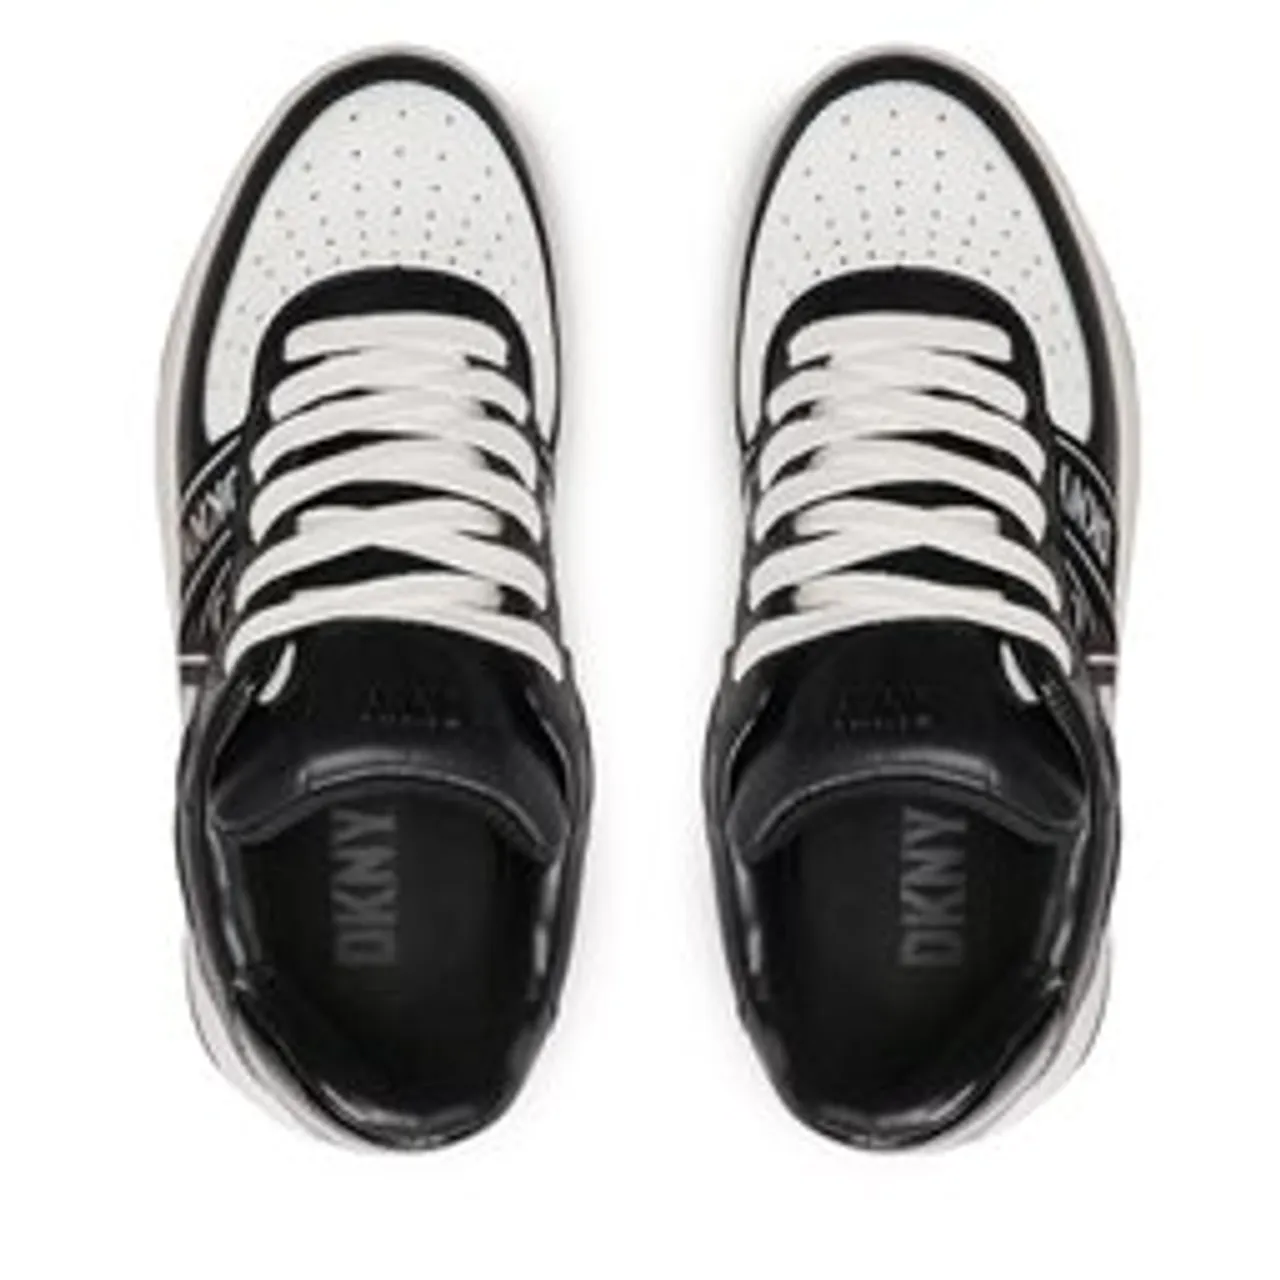 Sneakers DKNY Olicia K4205683 White/Black 1